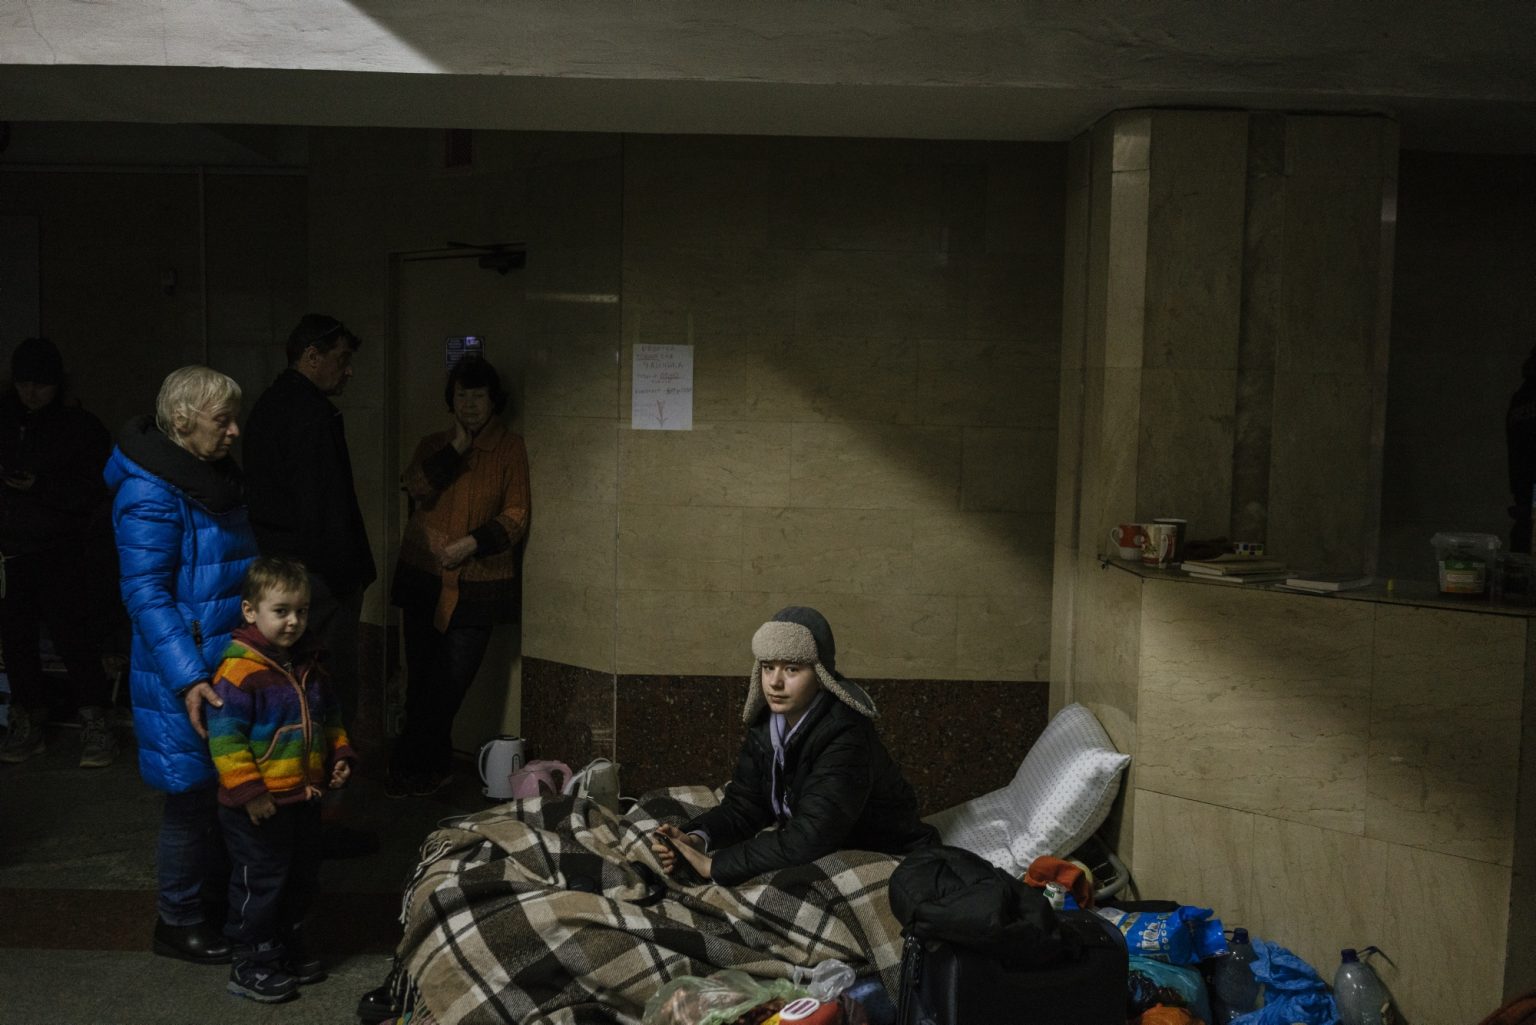 01558422 UKRAINE, Kharkiv. March 17, 2022 - People inside a metro station in Kharkiv used as a bomb shelter.                  As Russia invades Ukraine, thousands of Ukrainians are fleeing the country to find shelter in bordering countries. 
---------
Con l'invasione russa ai danni dell'Ucraina, migliaia di ucraini sono in fuga dalla nazione d'origine per cercare rifugio nelle nazioni confinanti.*** SPECIAL   FEE   APPLIES *** *** Local Caption *** 01558422